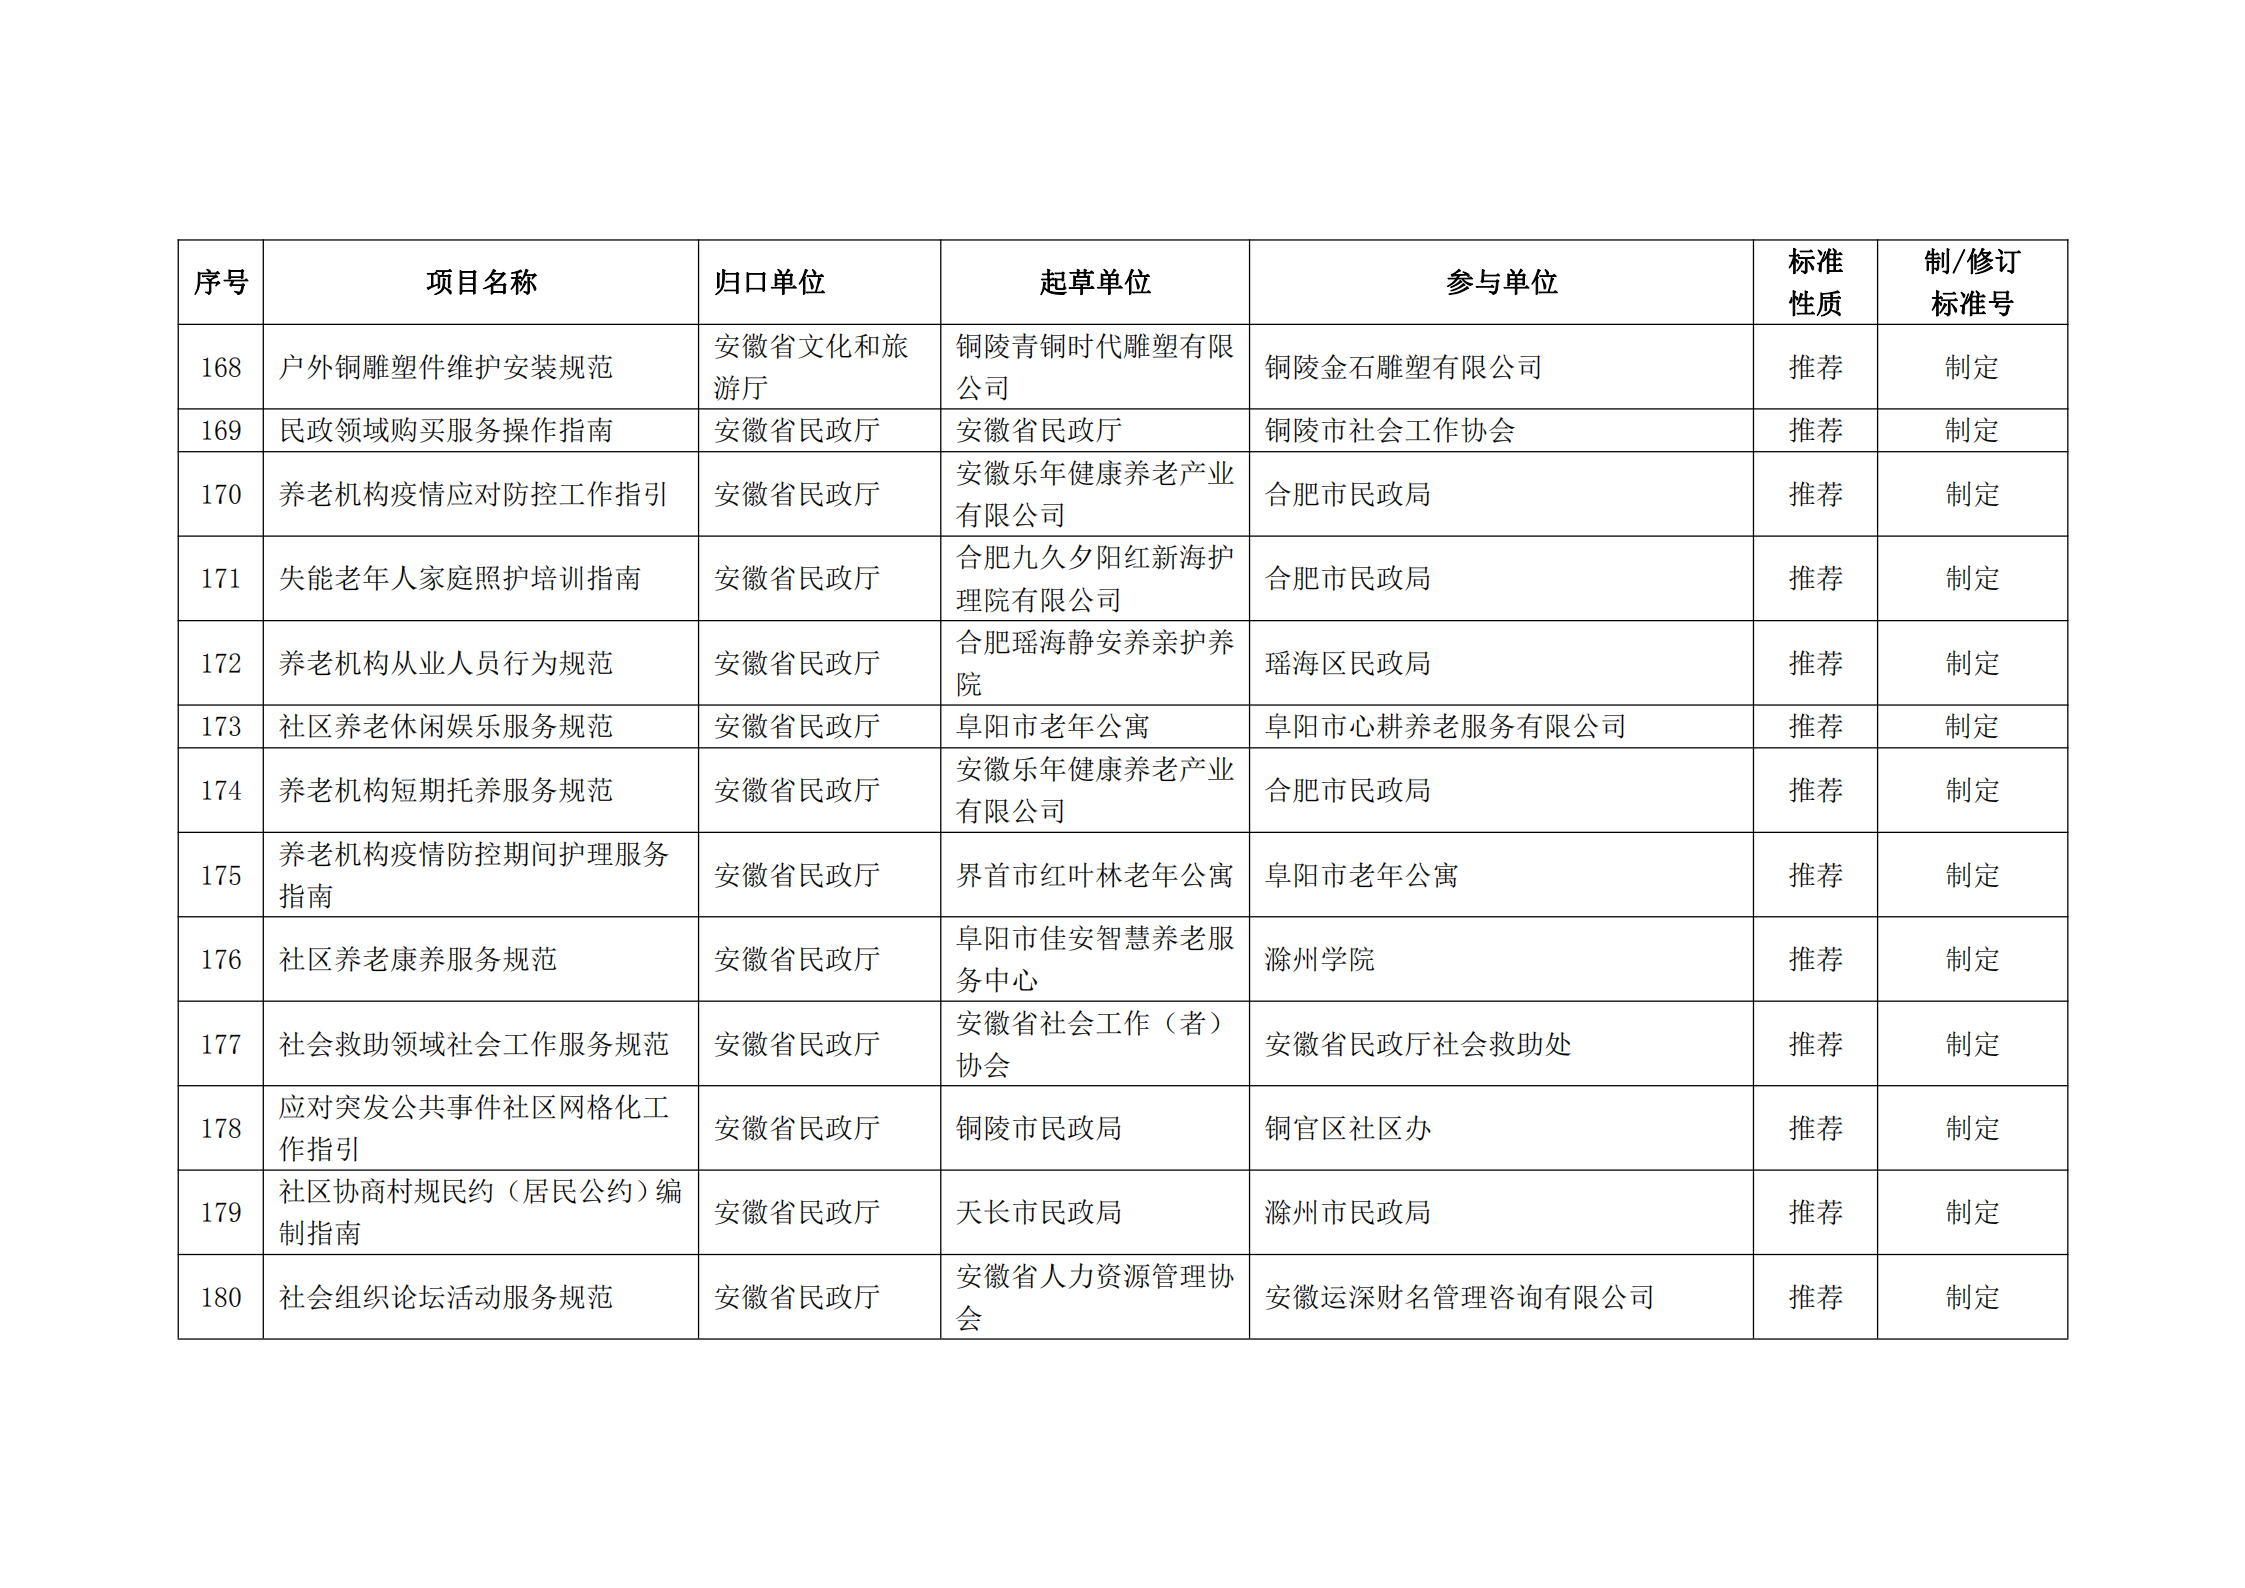 2020 年第二批安徽省地方标准制、修订计划项目汇总表(图20)